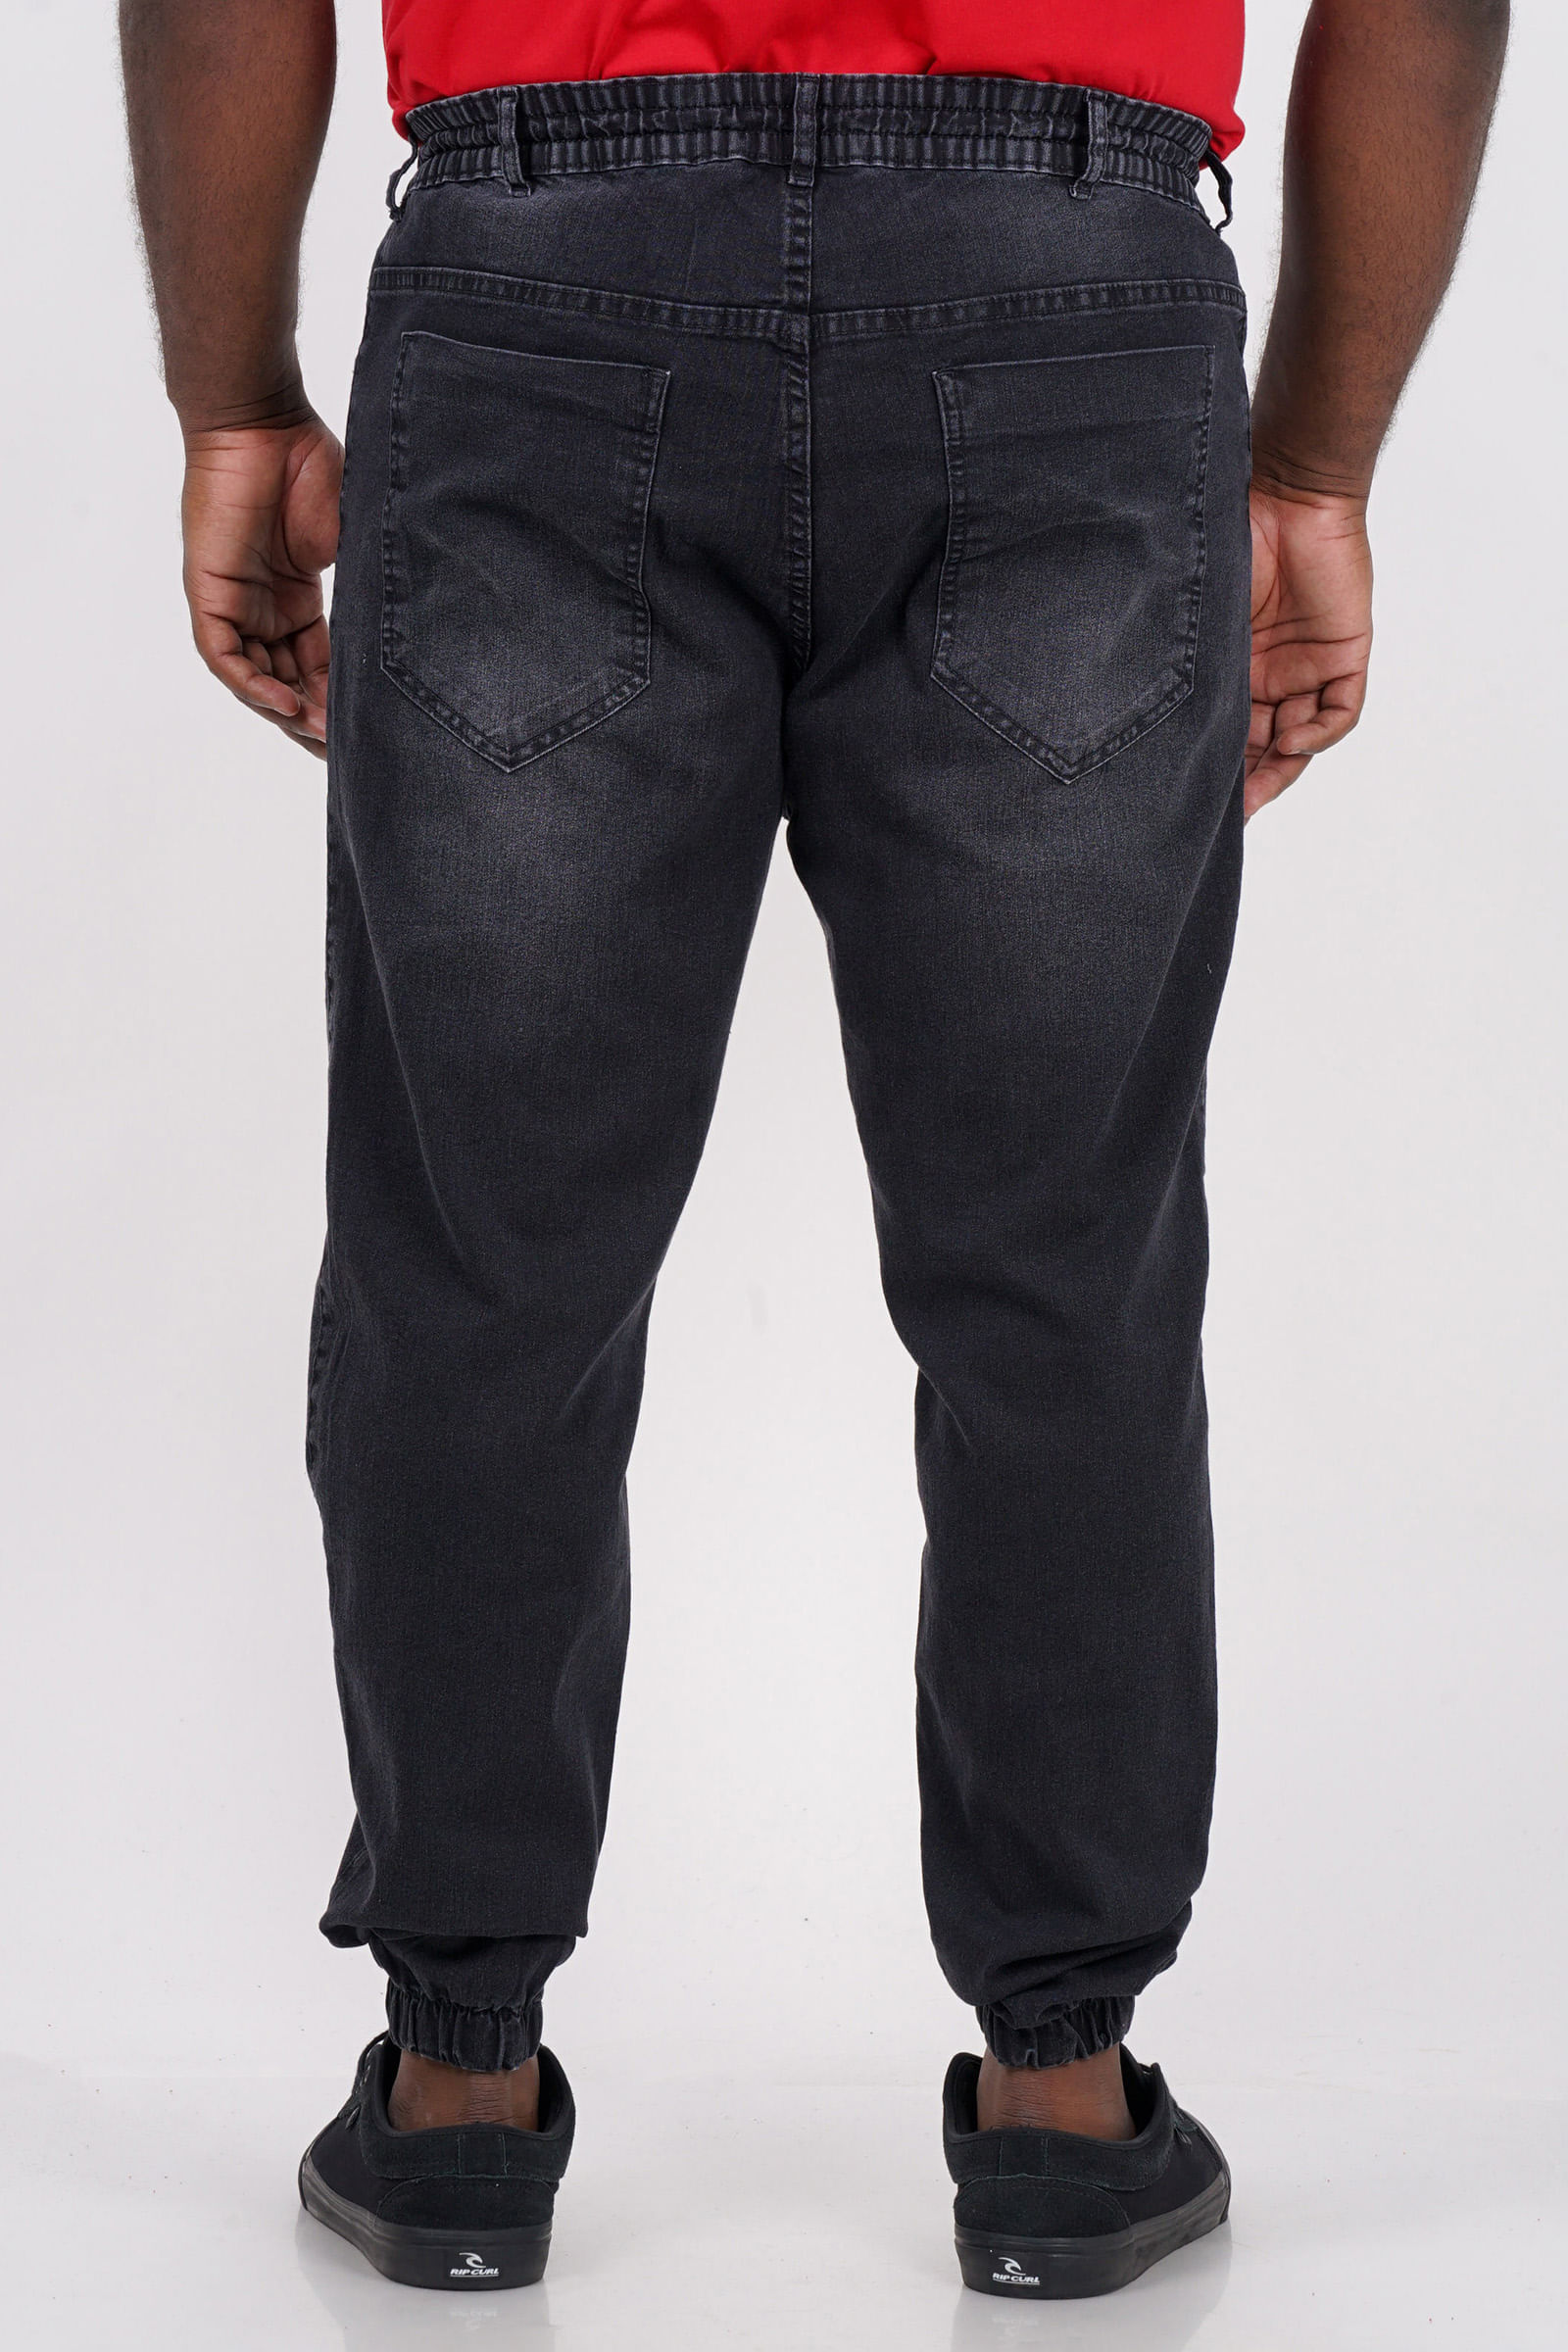 Calca-jogger-black-jeans-plus-size